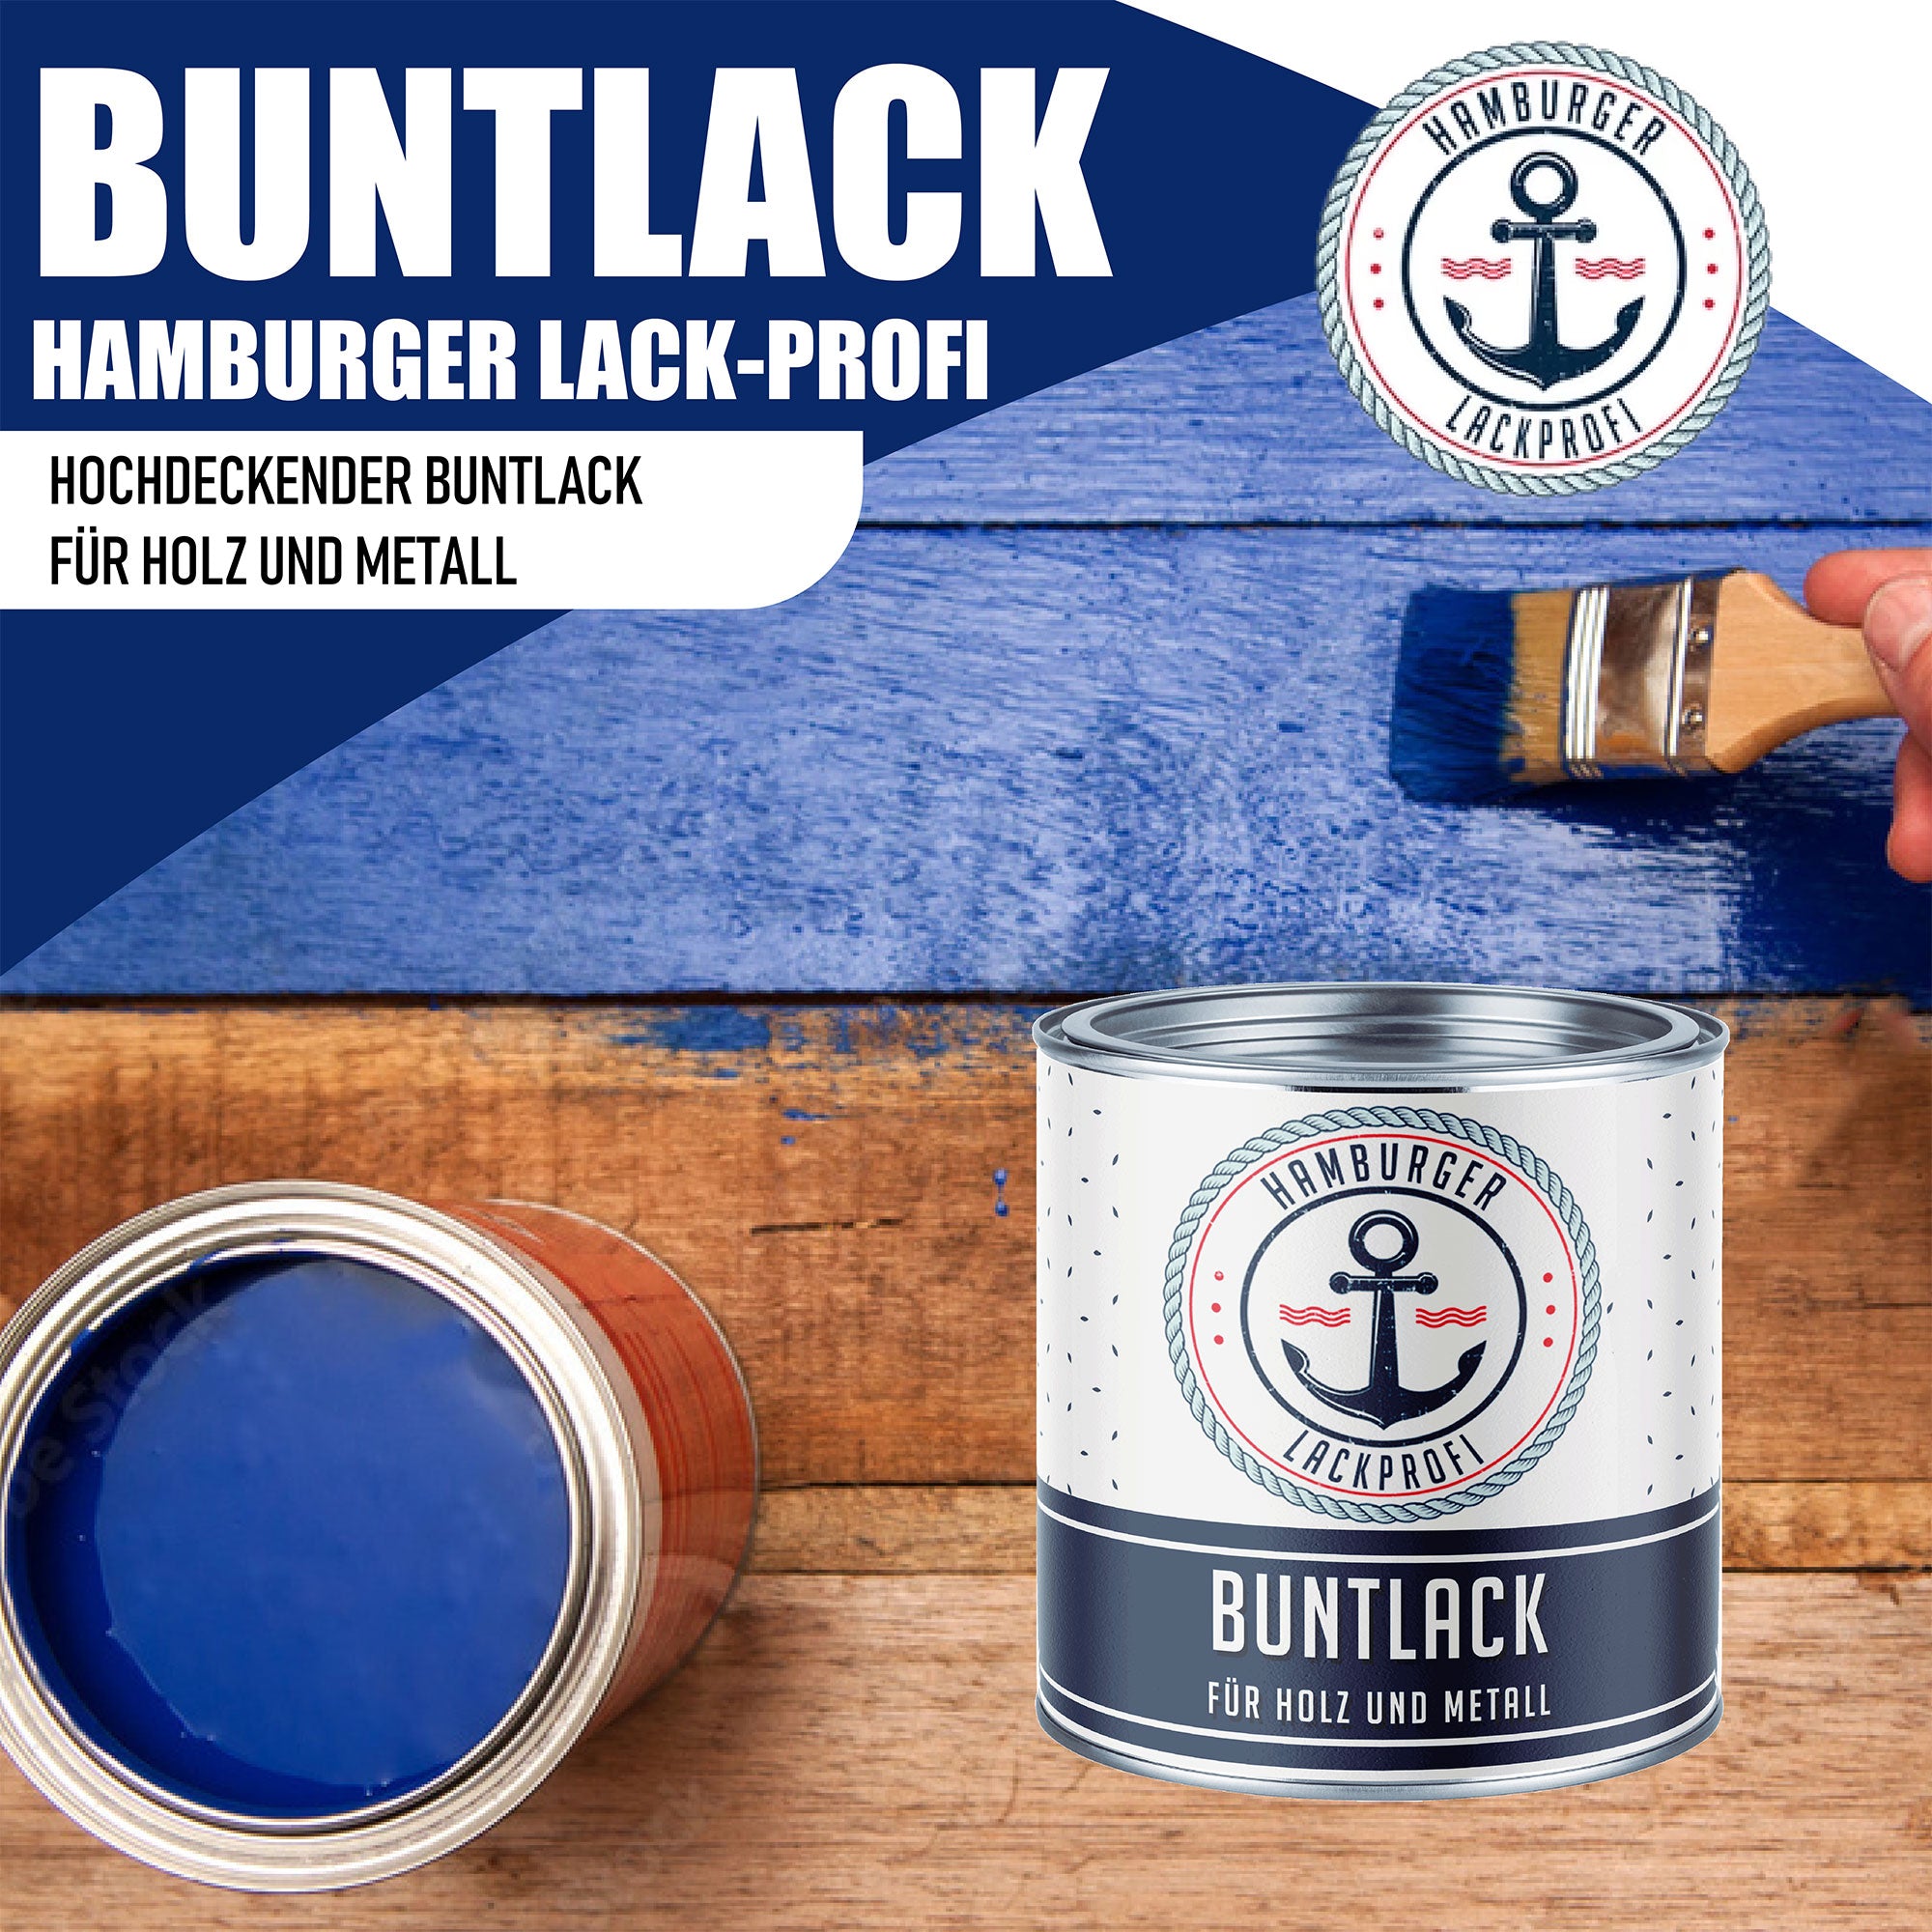 Hamburger Lack-Profi Buntlack Granitgrau RAL 7026 - Robuster Kunstharzlack